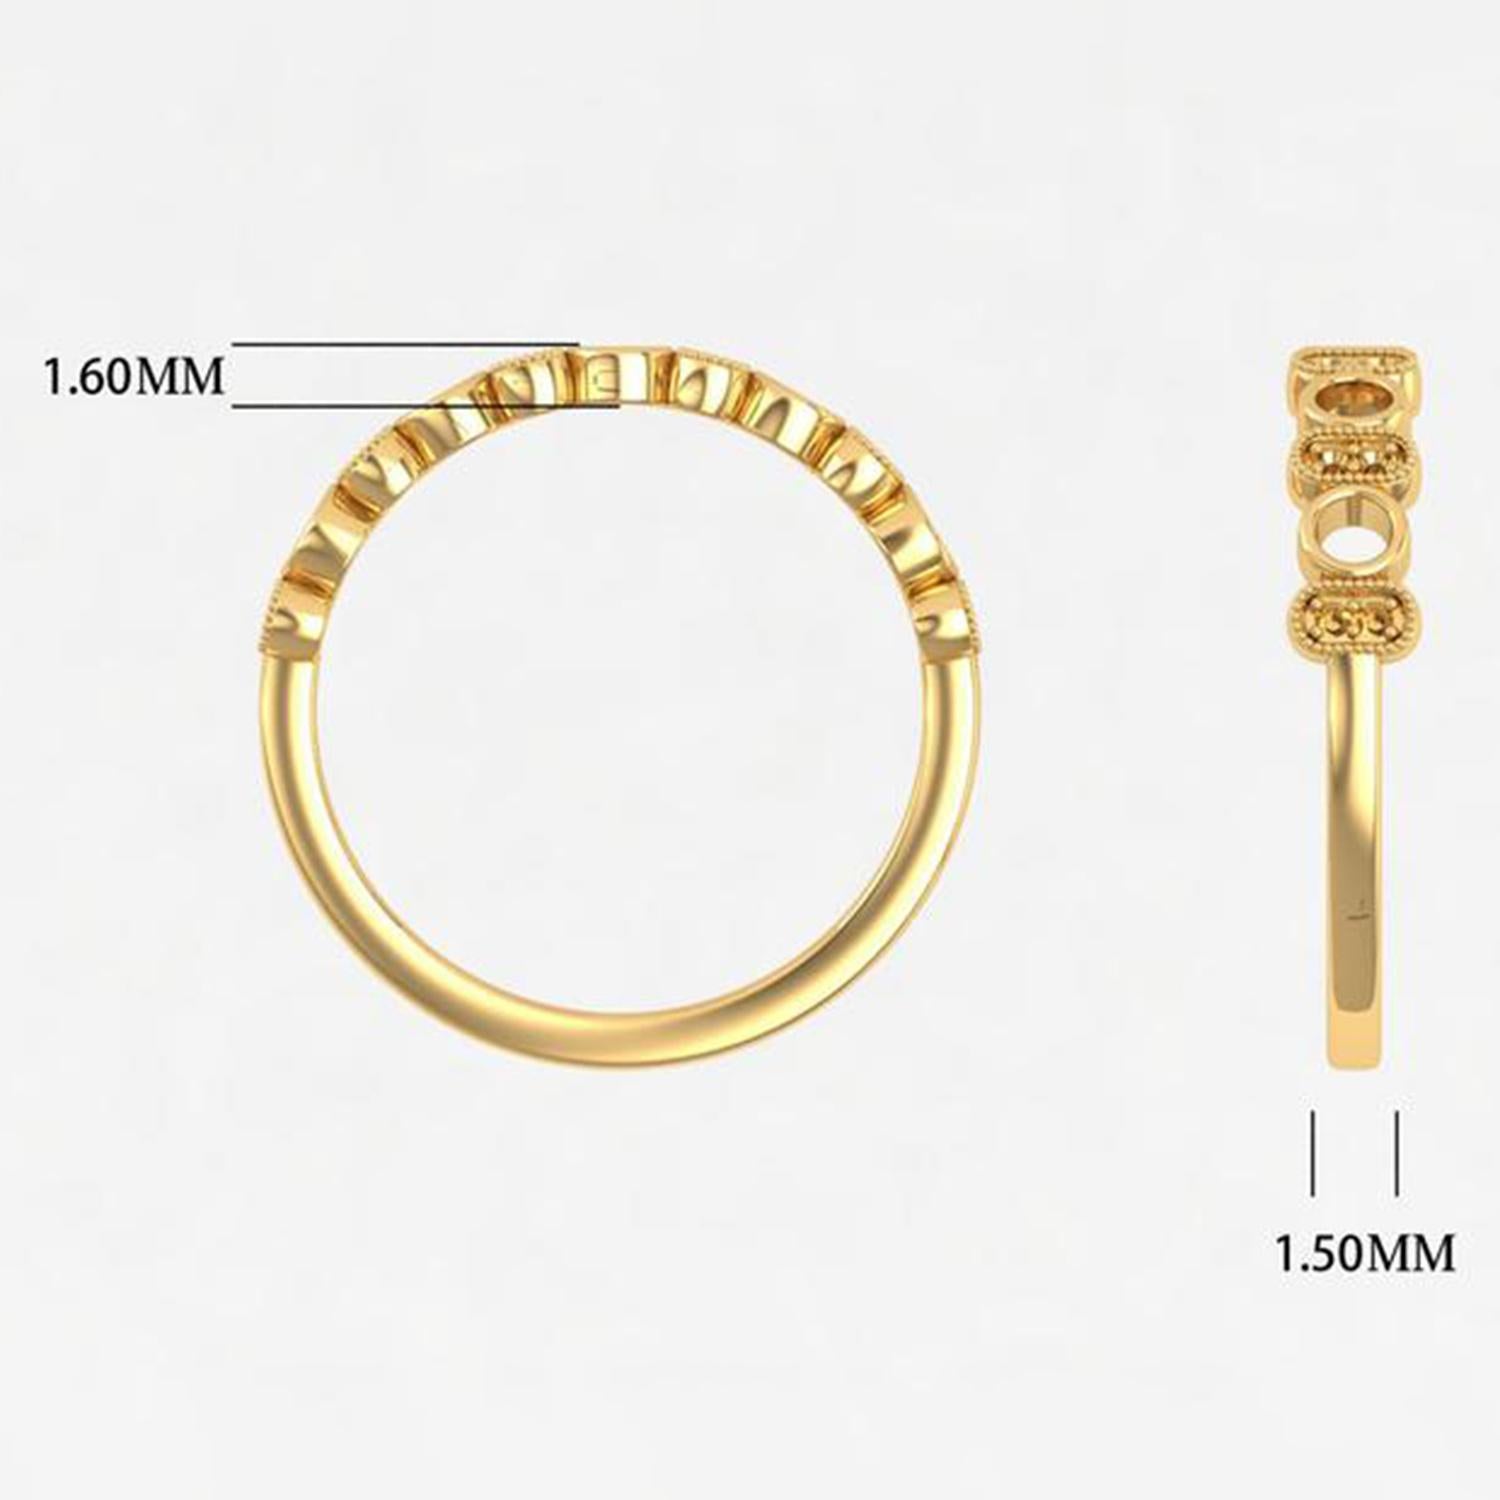 Modern 14 Karat Gold Diamond Ring / 2 MM Citrine Ring / Ring for Her / Cluster Band For Sale